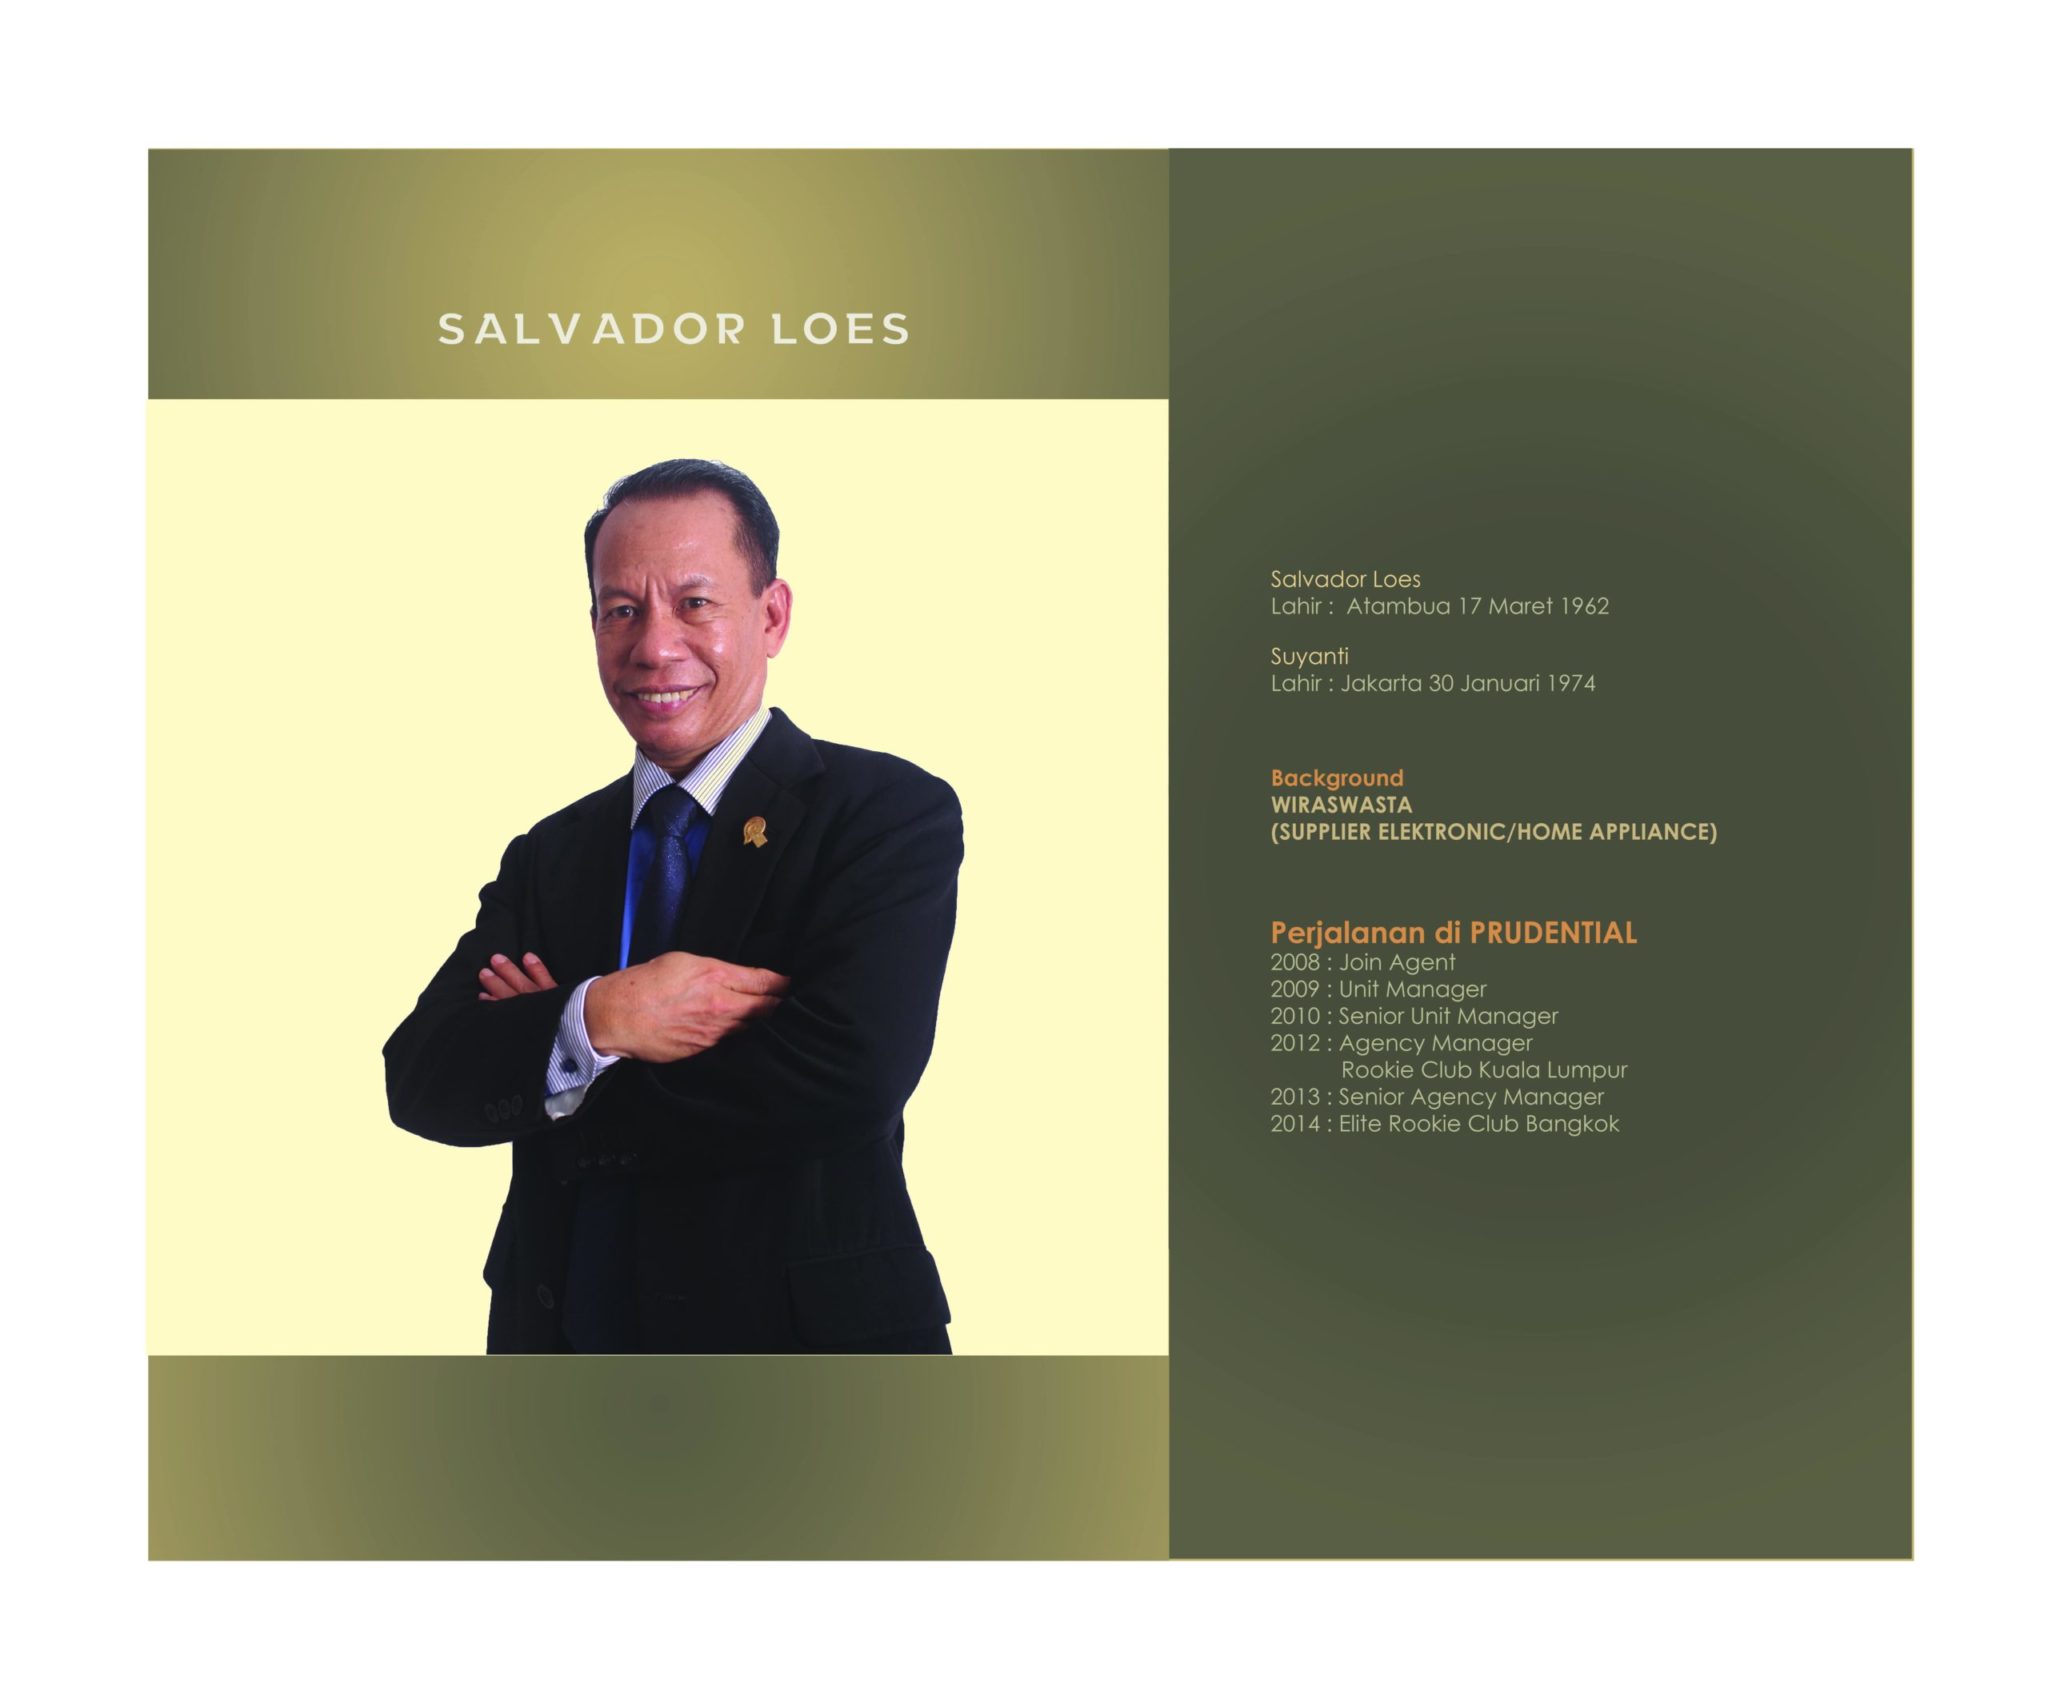 SALVADOR LOES